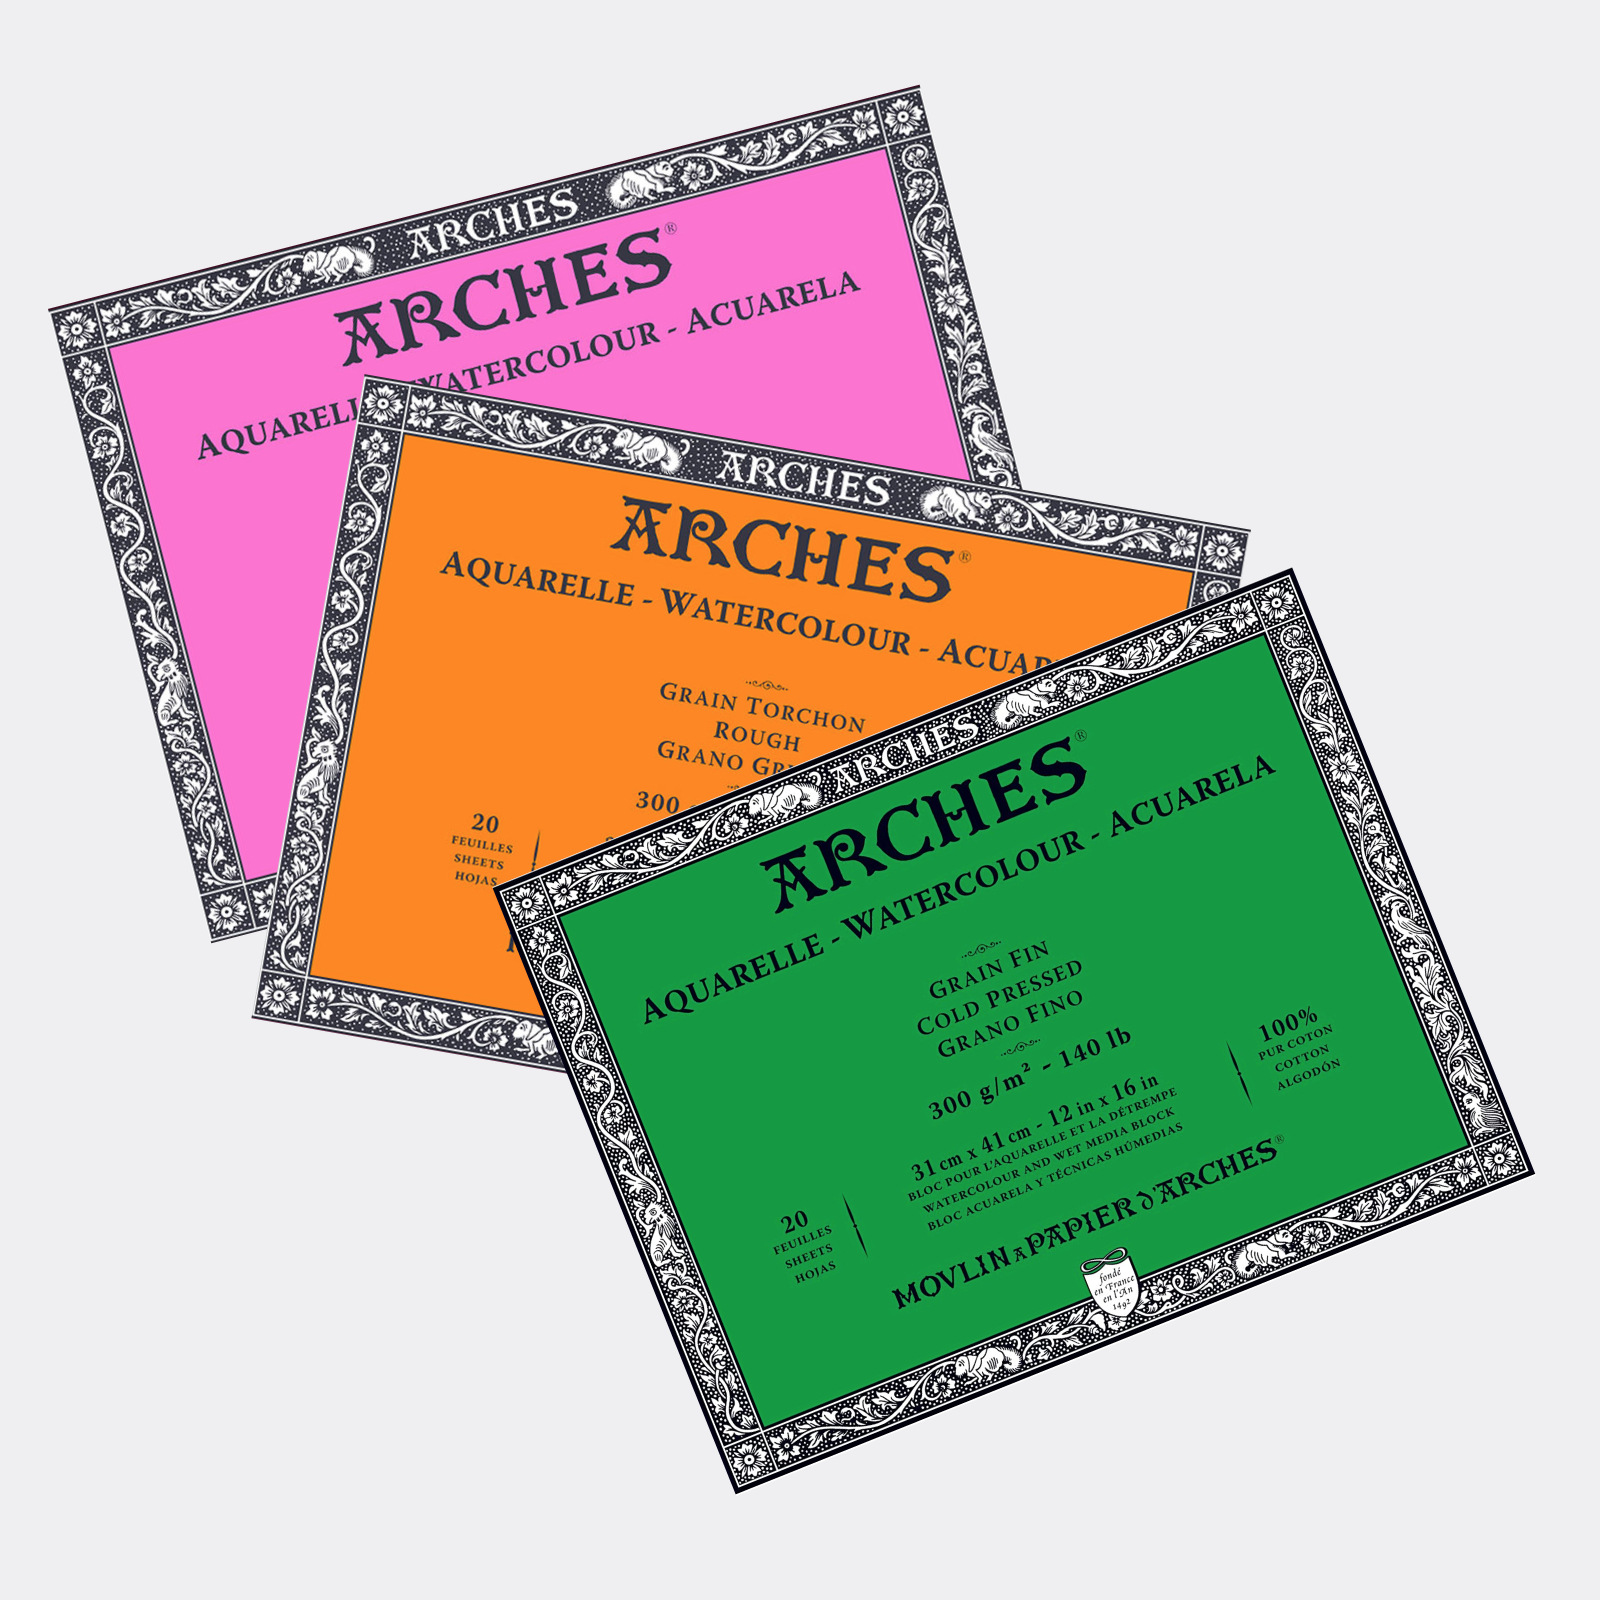 Blocco acquerello Arches - AQVARELLE ARCHES - 31 x 41 cm - 20